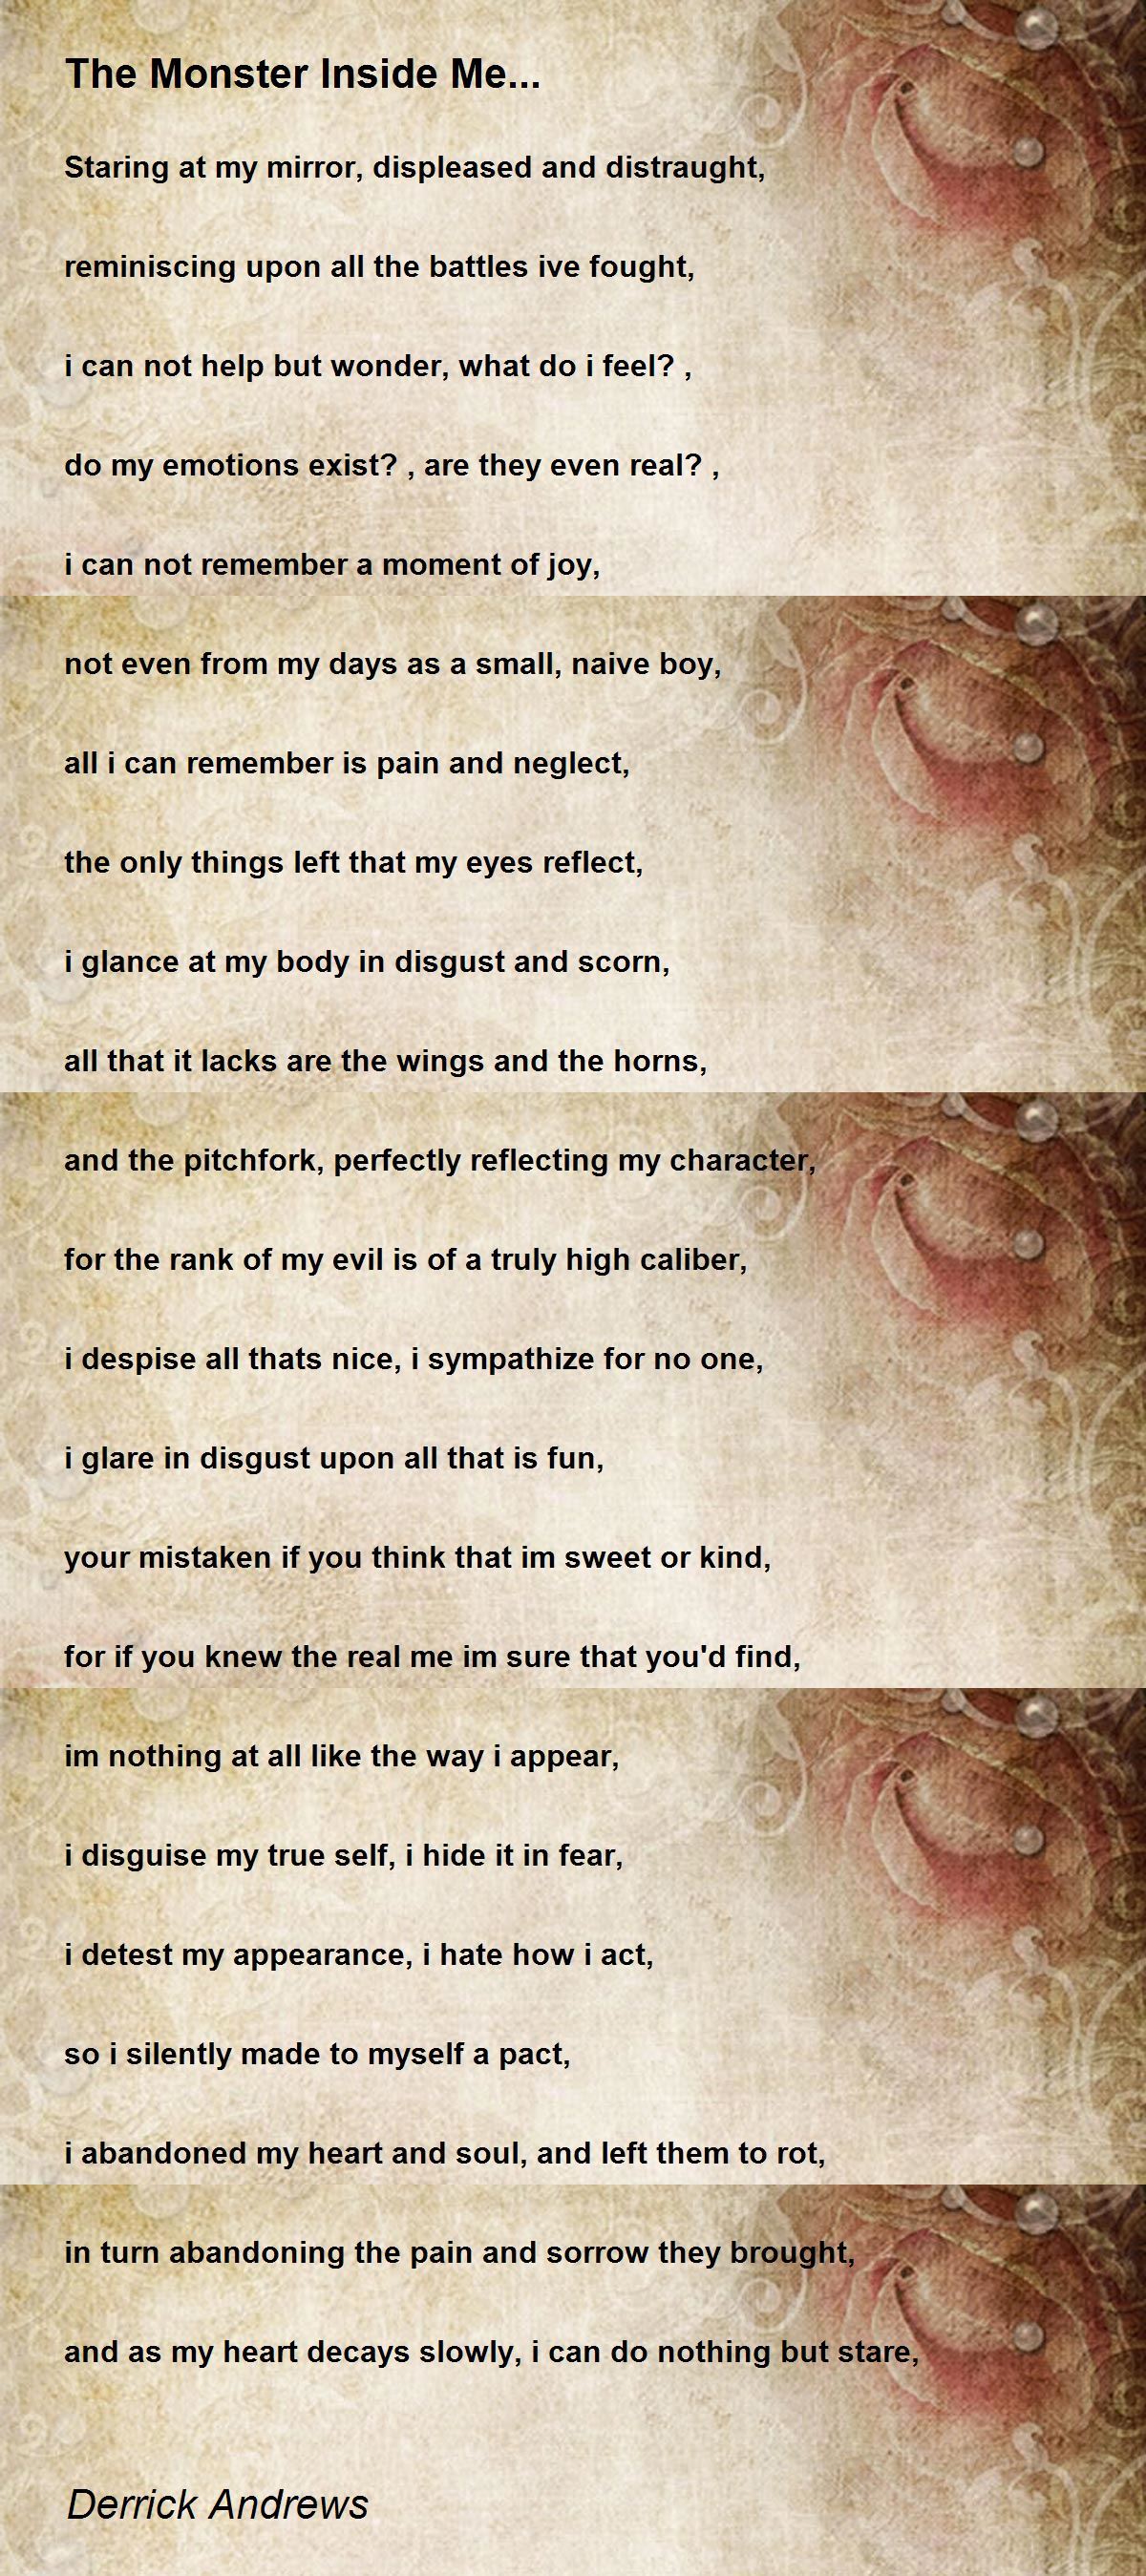 The Monster Inside Me... - The Monster Inside Me... Poem by Derrick Andrews